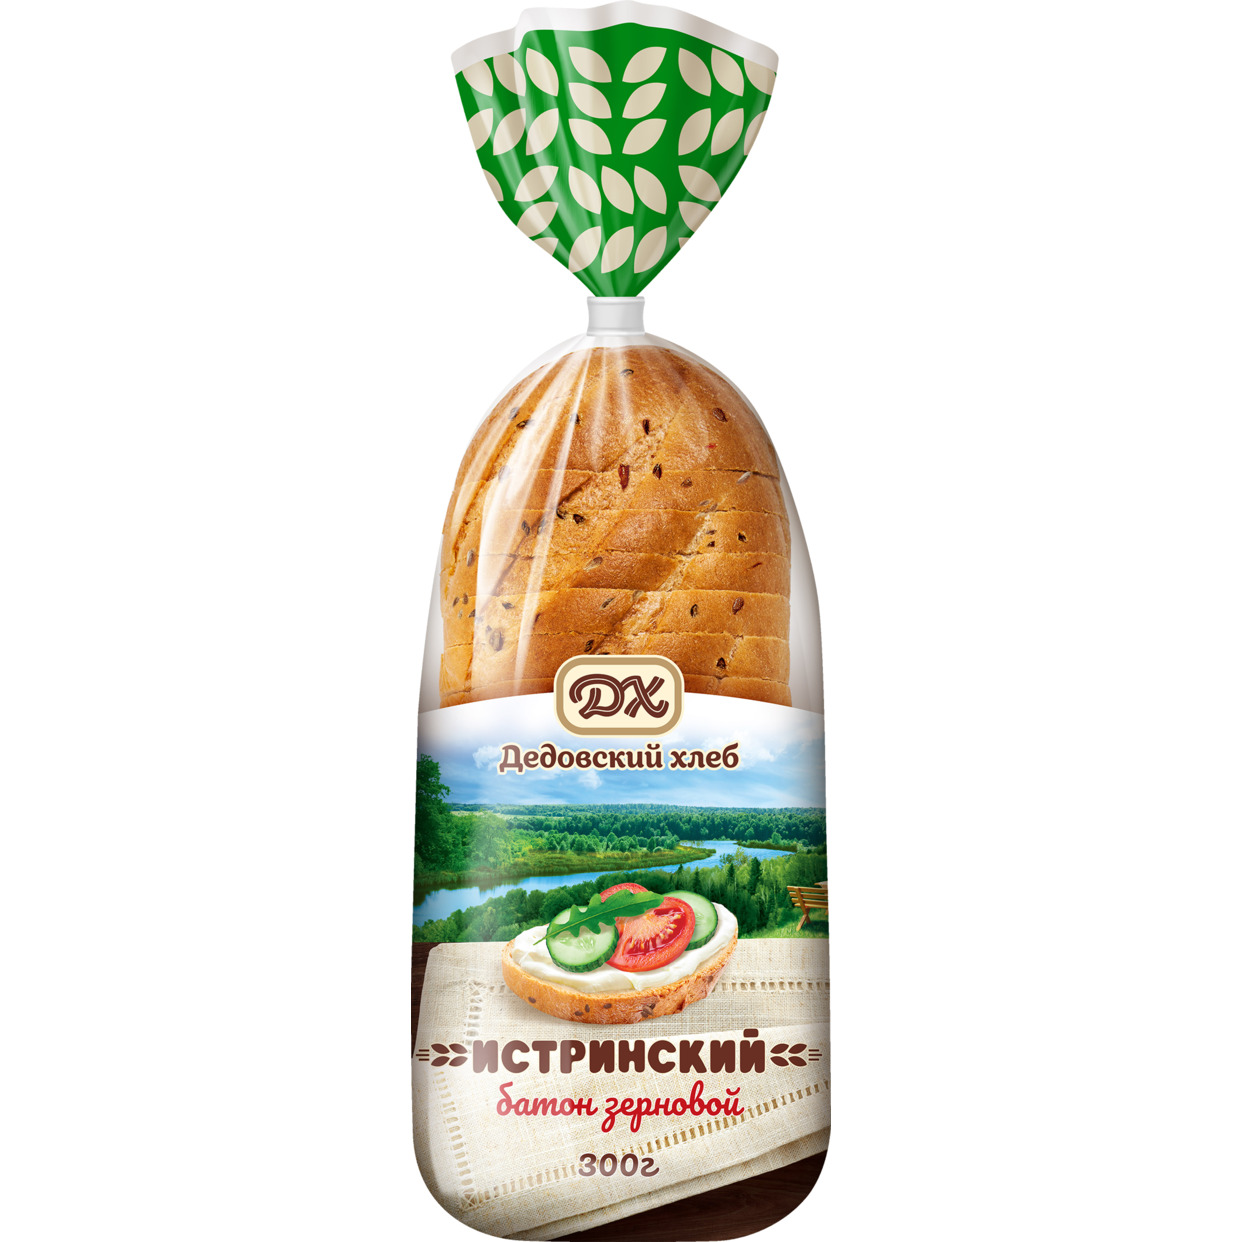 Изделие хлебобулочное из пшеничной муки: батон «Истринский» зерновой нарезанный в упаковке, 300 г